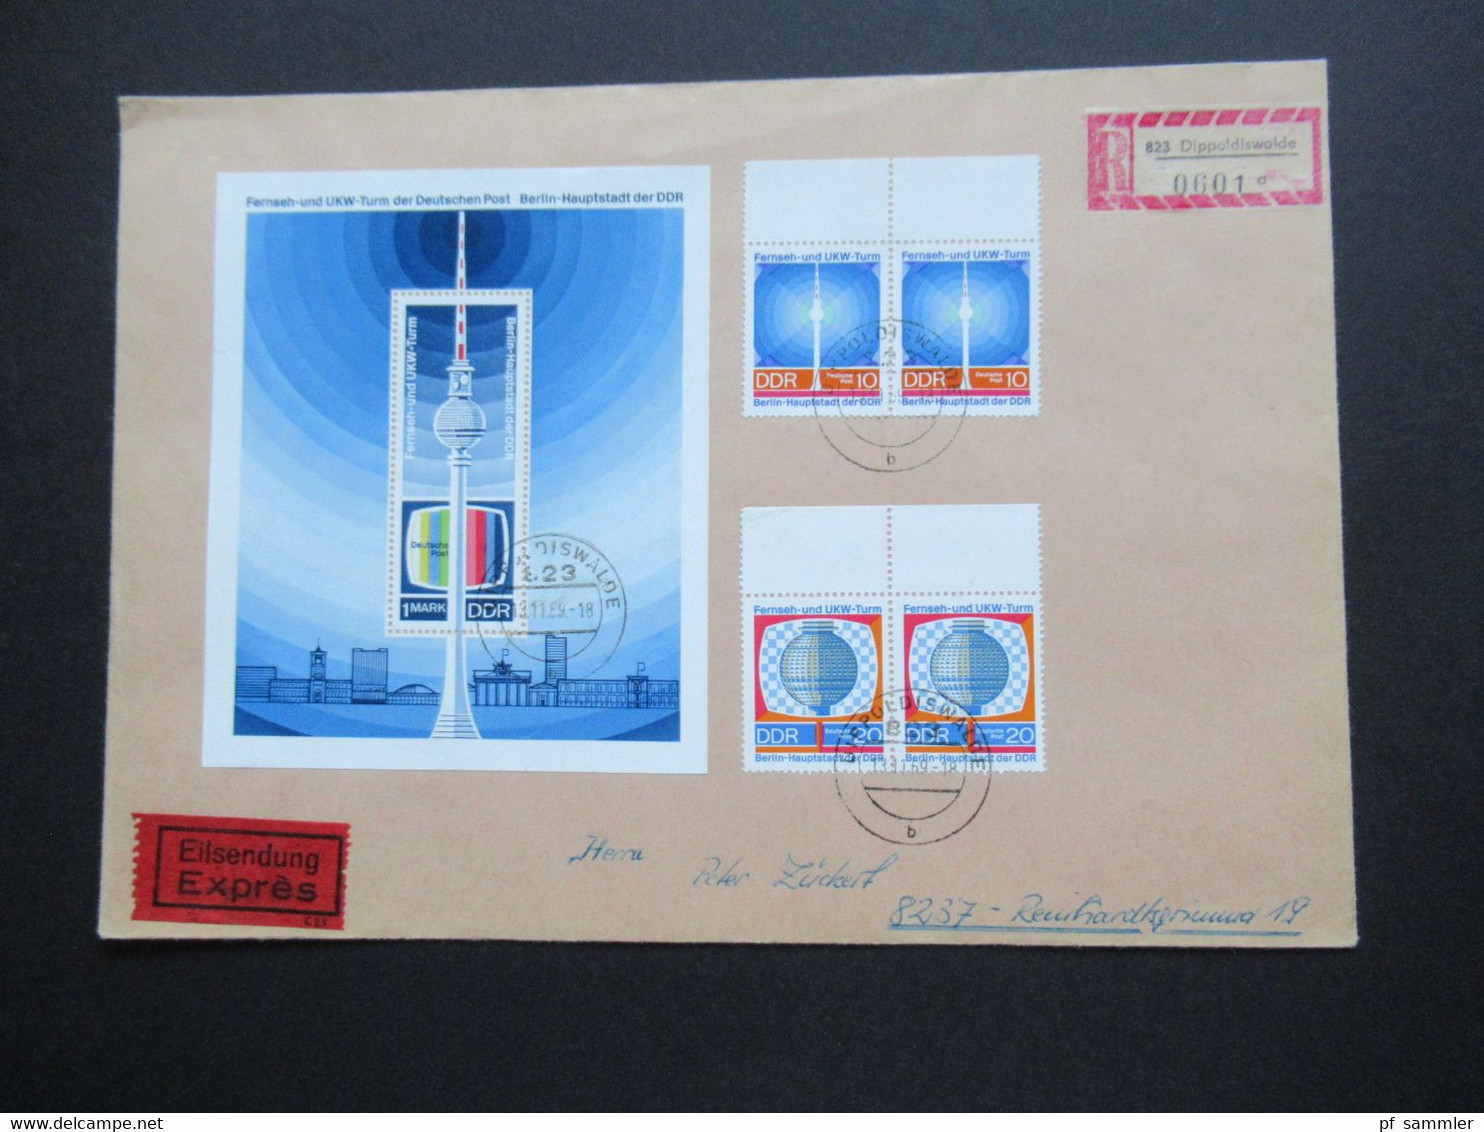 DDR 1969 Eröffnung UKW Turm Der Post Nr. 1509 / 1510 Und Block 30 MiF Eilsendung Express Einschreiben Dippoldiswalde - Briefe U. Dokumente